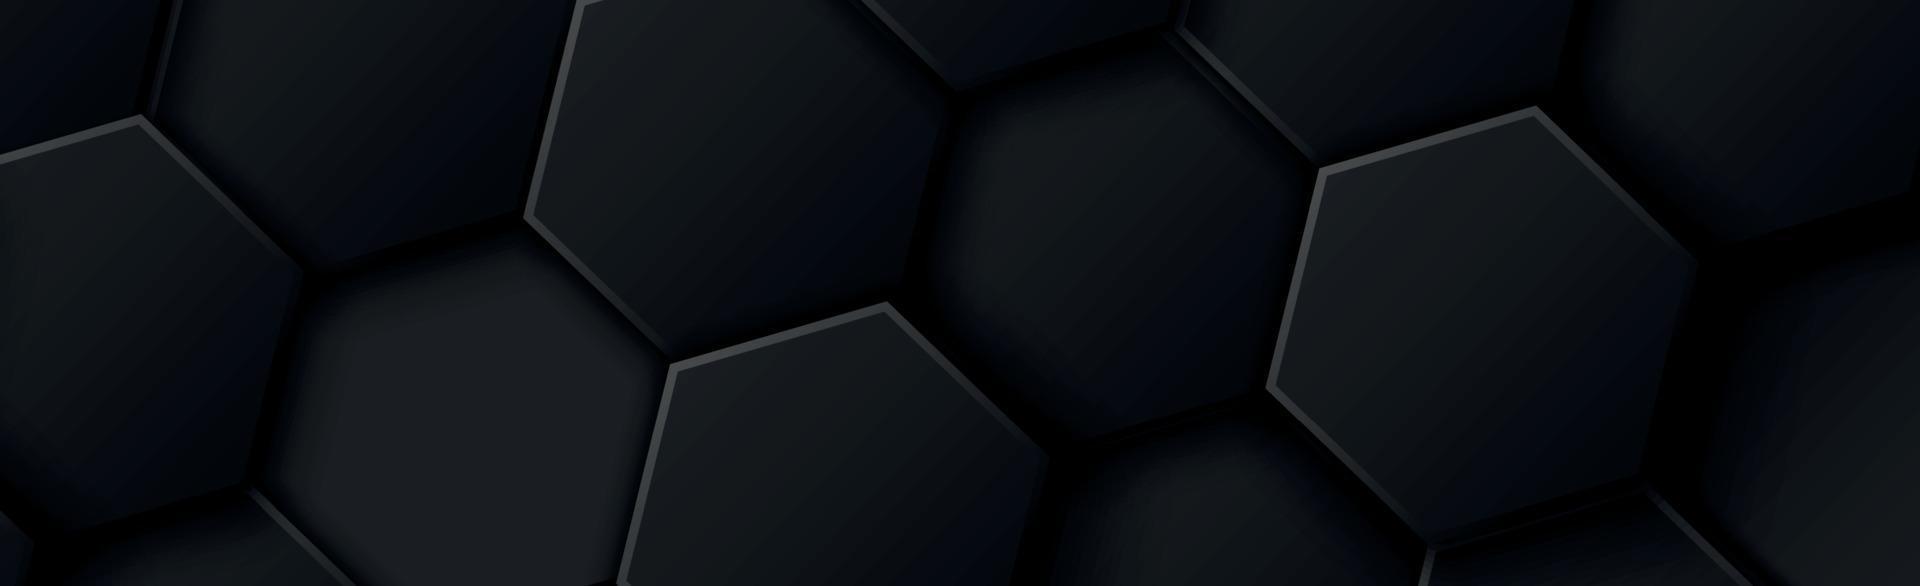 abstrakta hexagoner svart på en svart och grå bakgrund vektor